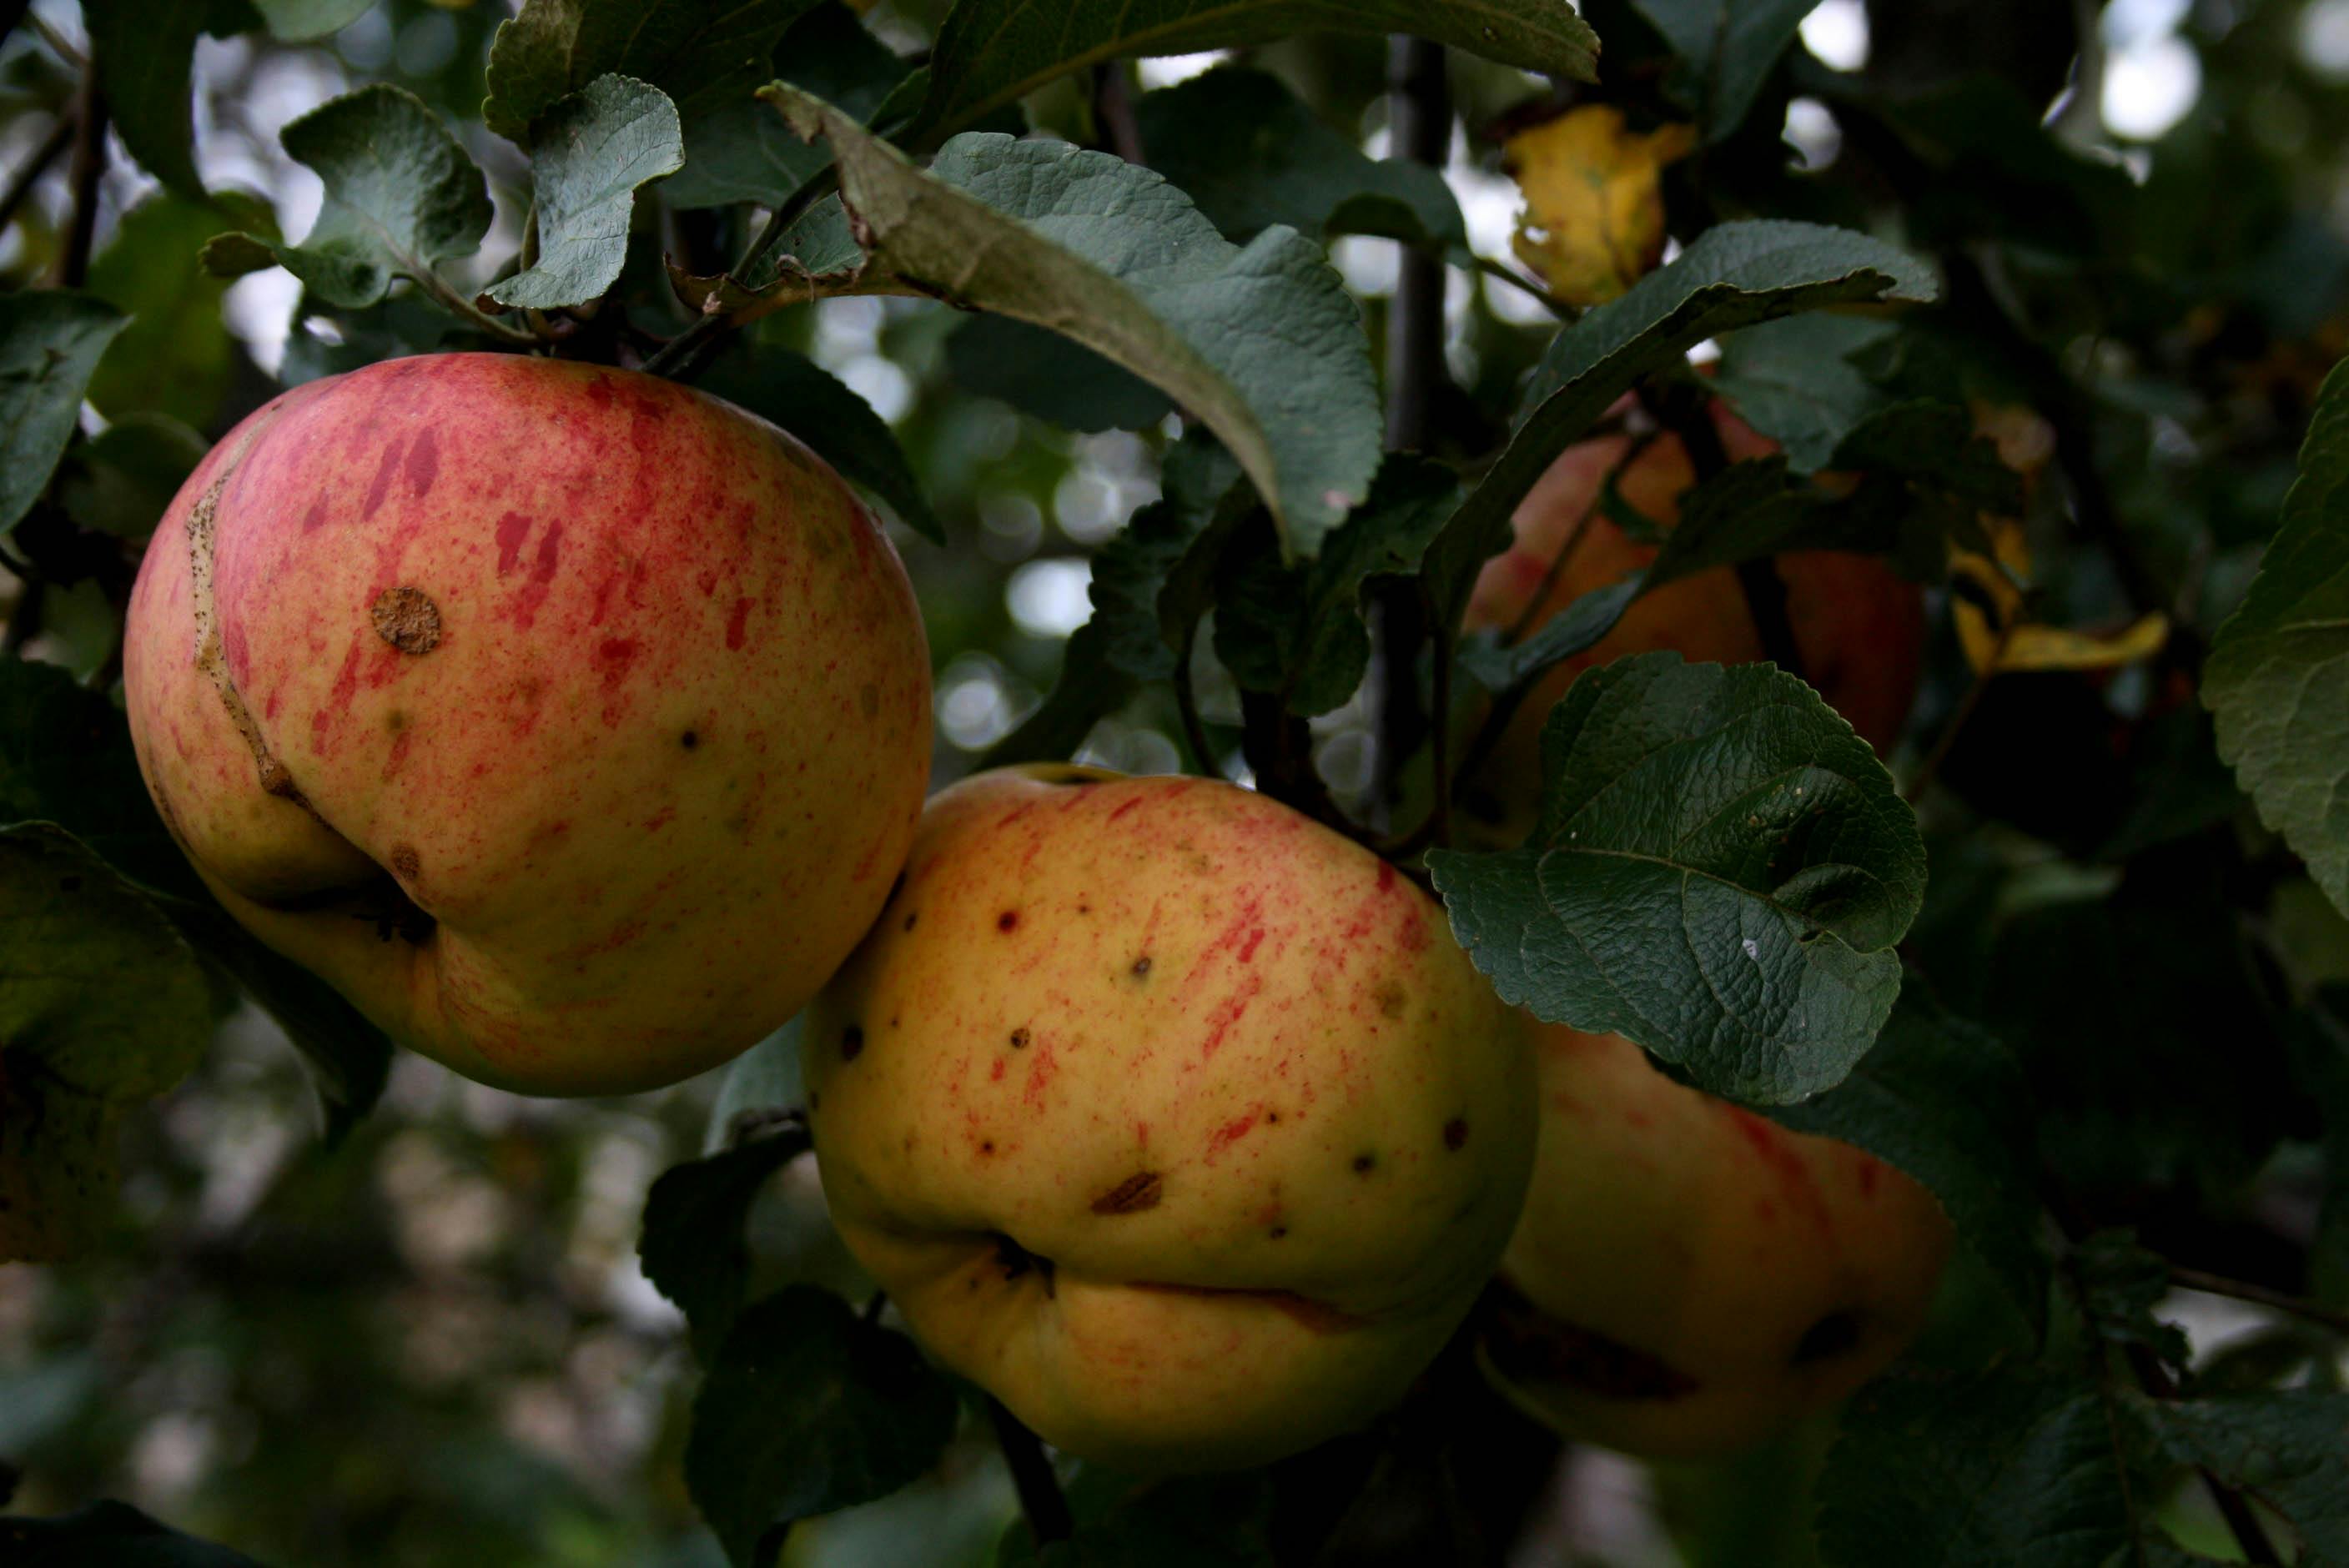 Free stock photo of apple tree, apples, apples on tree